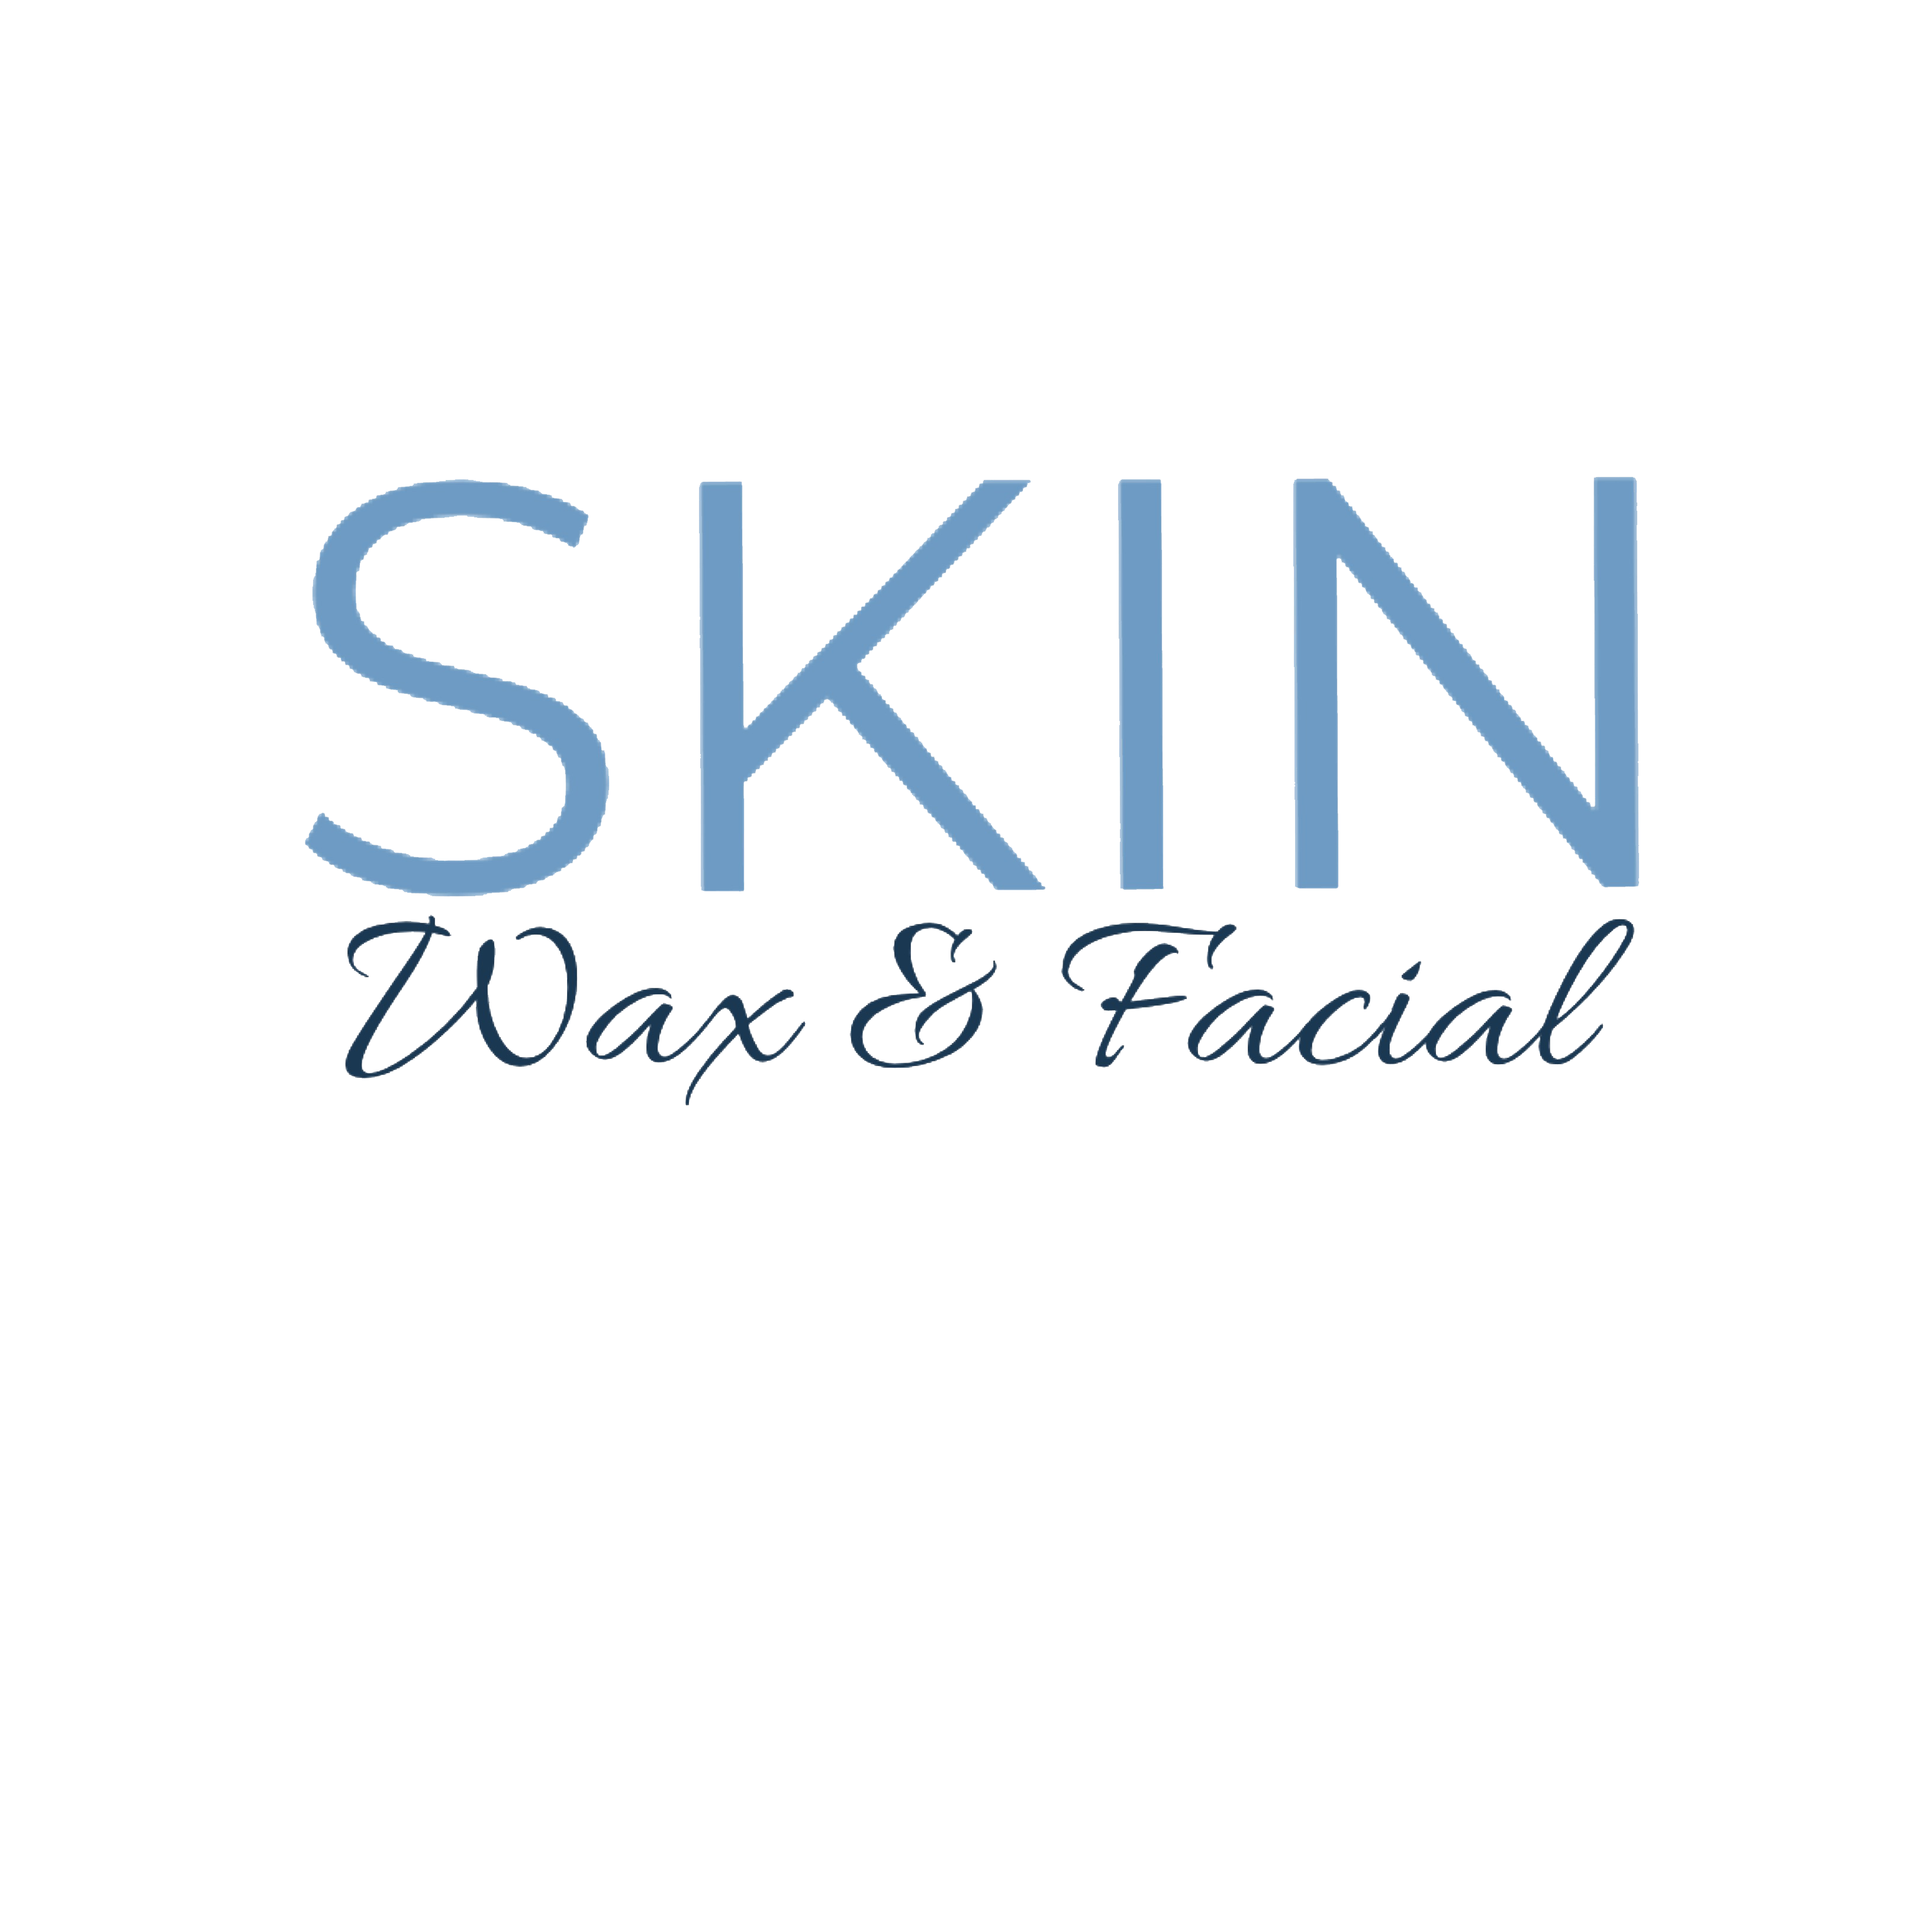 Skin Wax and Facial